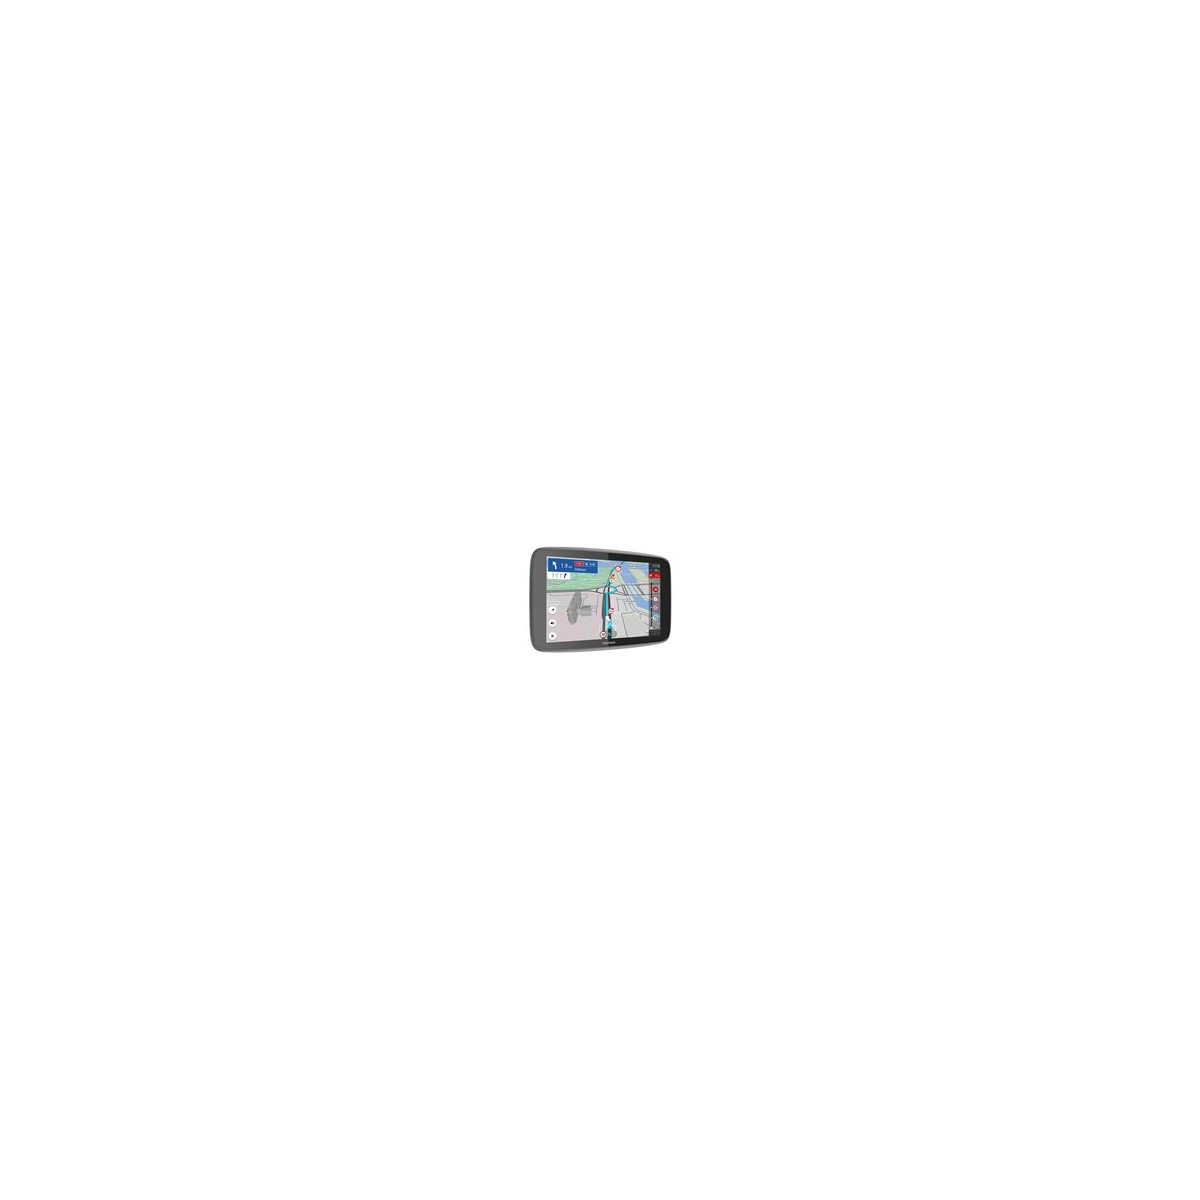 TomTom GO Expert - Multi - Internal - All Europe - 17.8 cm (7) - 1280 x 800 pixels - Flash